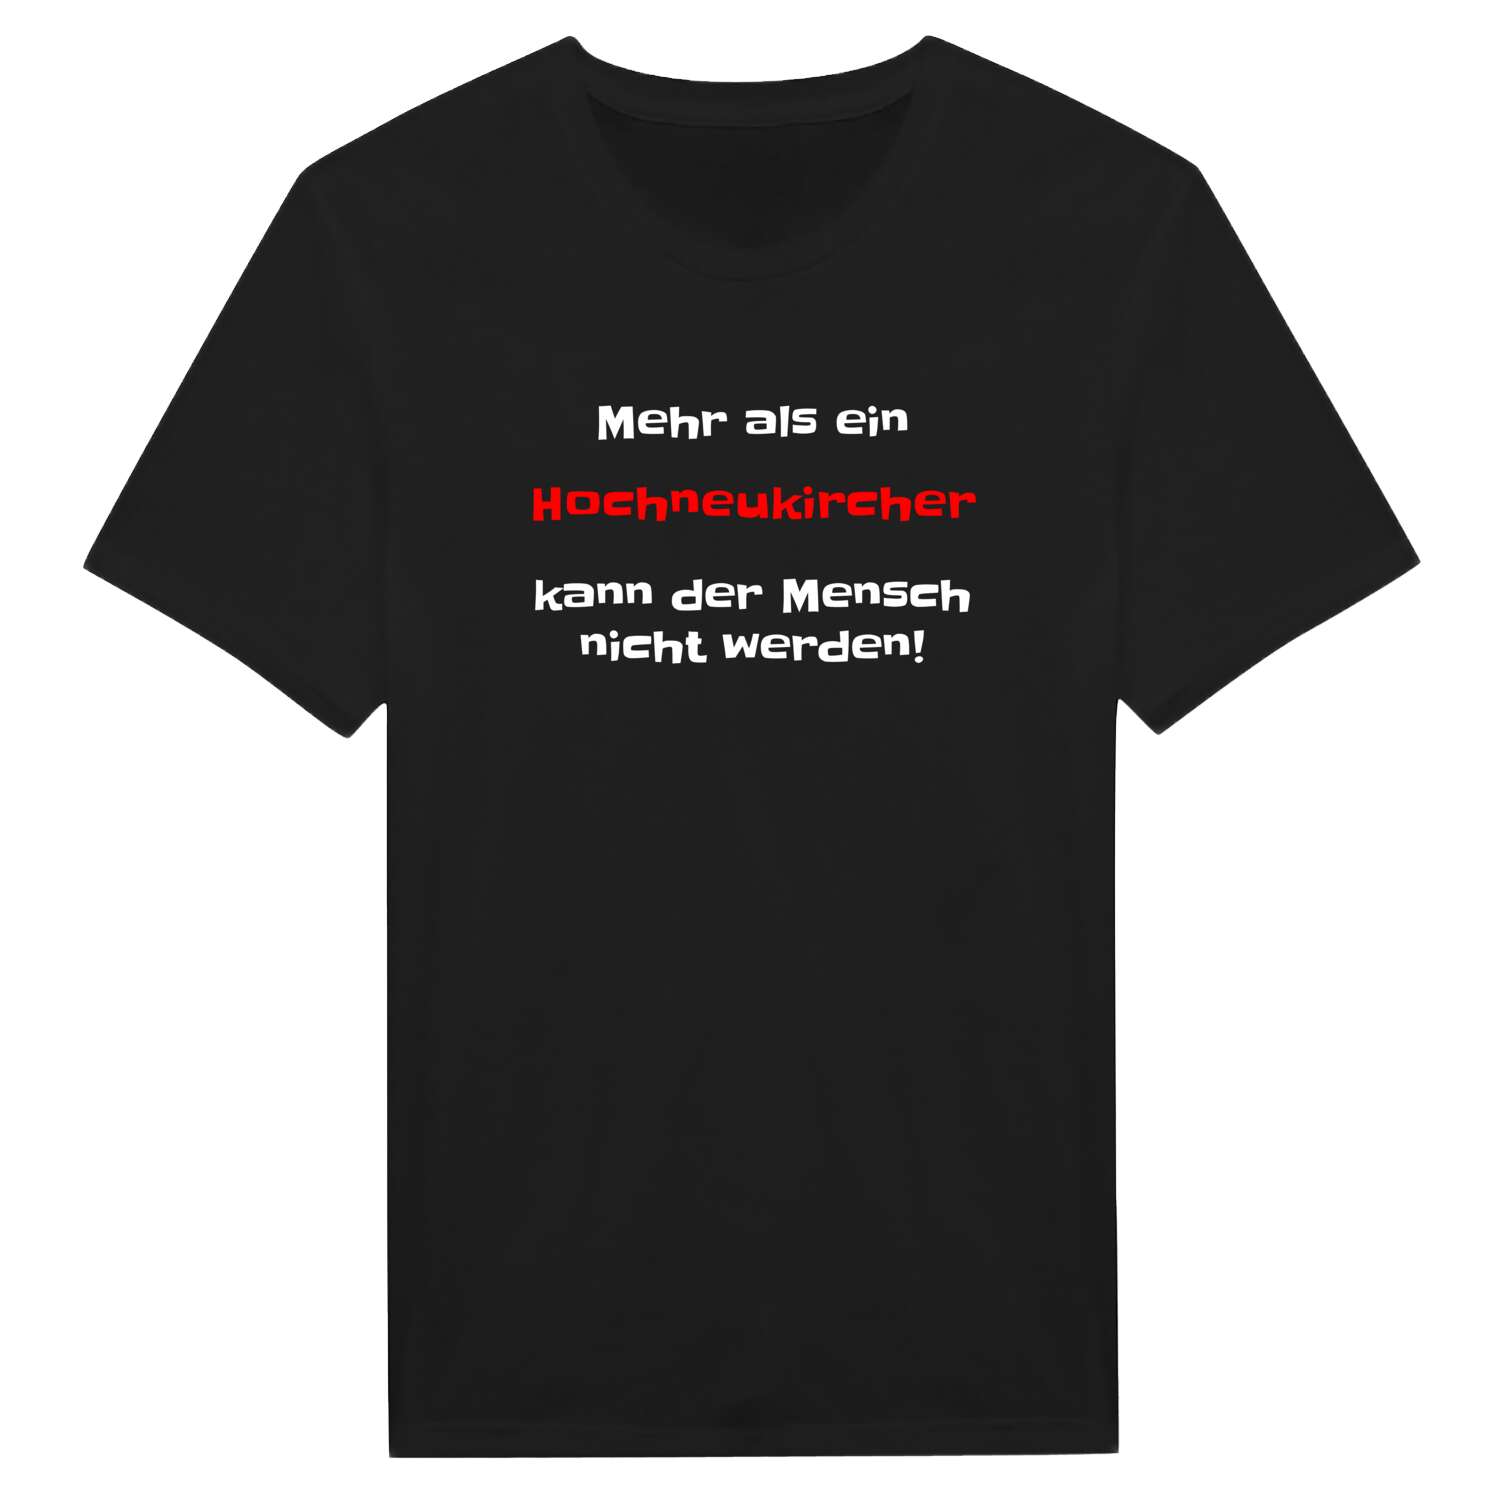 Hochneukirch T-Shirt »Mehr als ein«